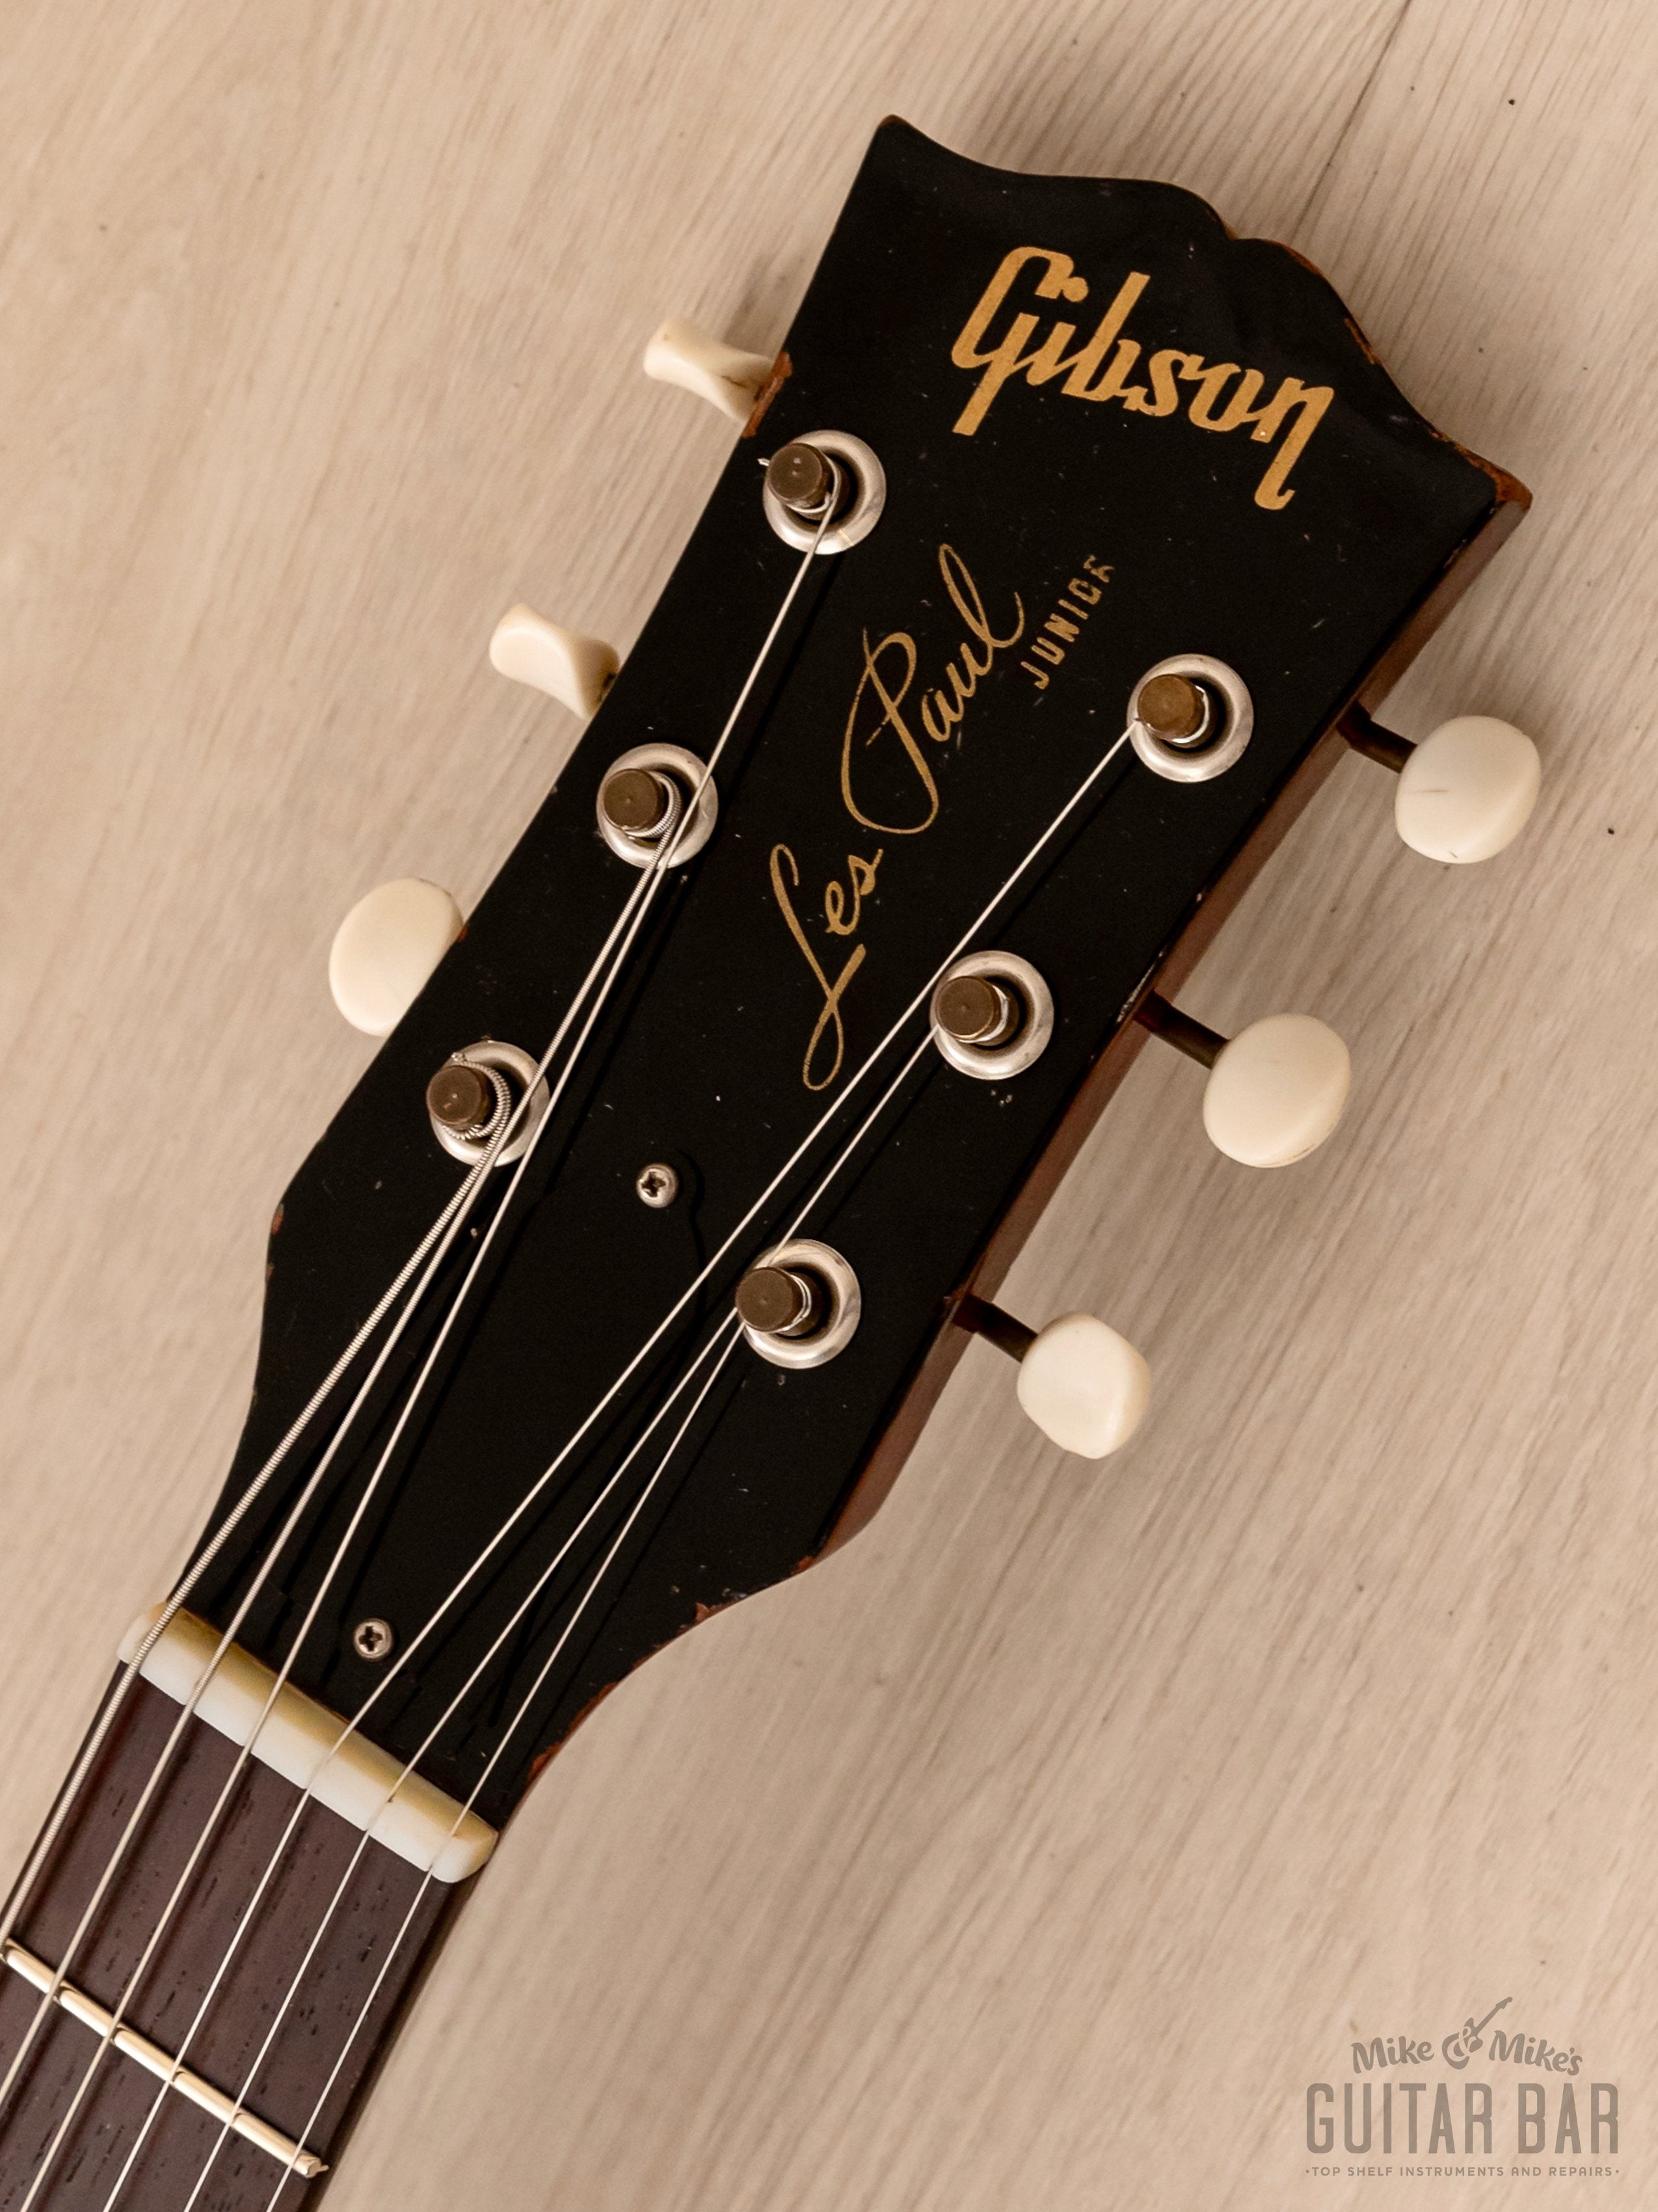 1959 Gibson Les Paul Junior Double Cut Cherry, 100% Original w/ Case